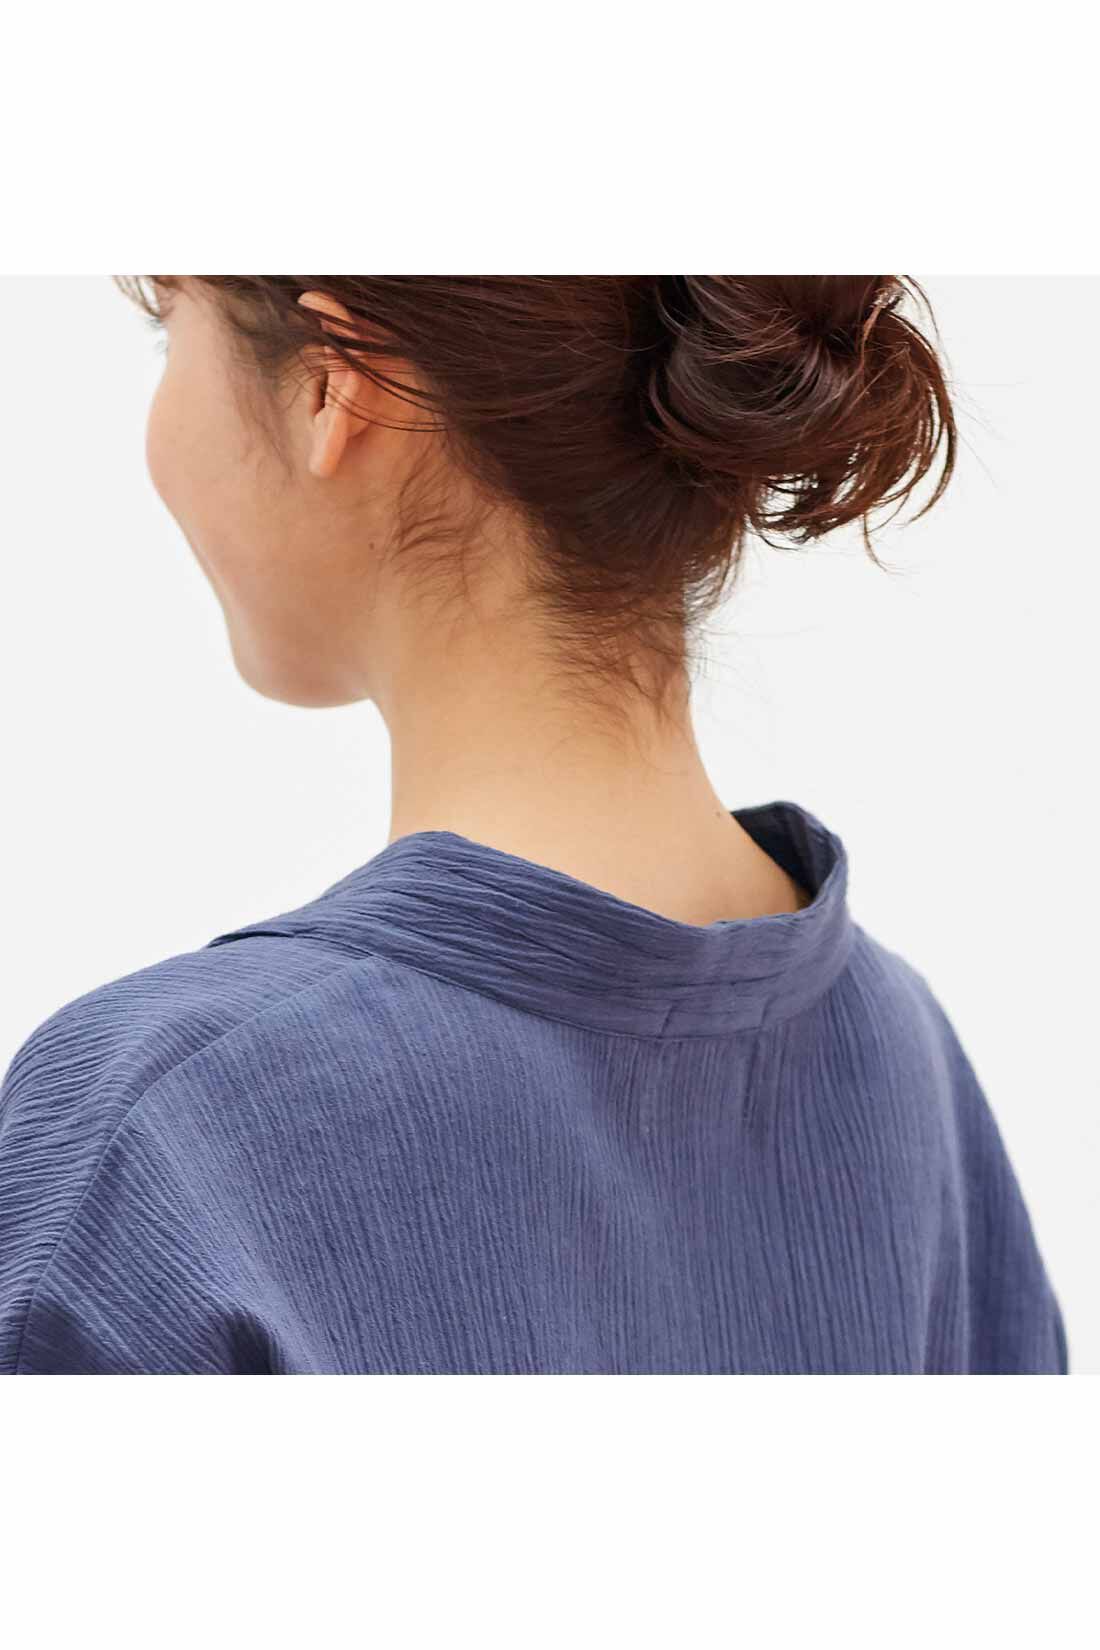 Live in  comfort|Live love cottonプロジェクト　リブ イン コンフォート　楊柳（ようりゅう）素材でサラリ オーガニックコットンロングチュニック〈ライムレモン〉|衿の後ろが自然に落ちて、着るだけで抜き衿が完成。